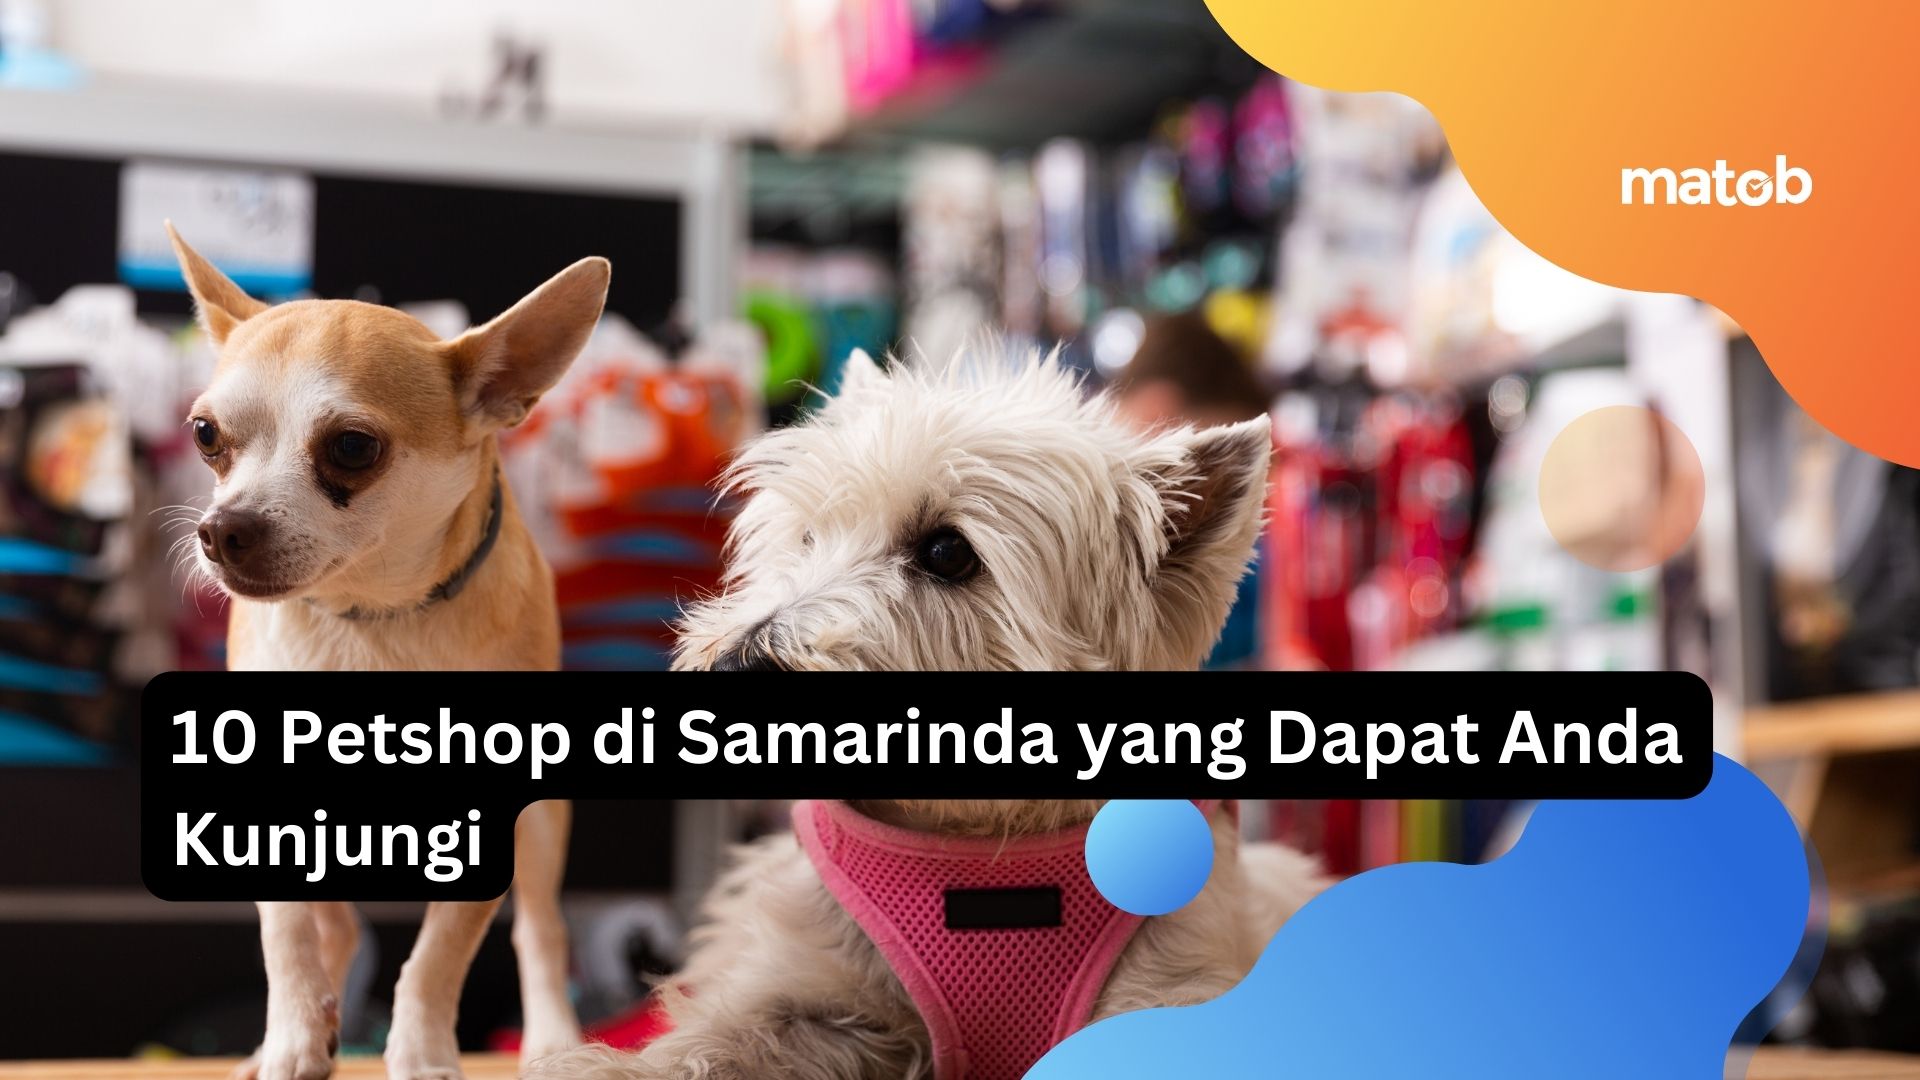 10 Petshop di Samarinda yang Dapat Anda Kunjungi